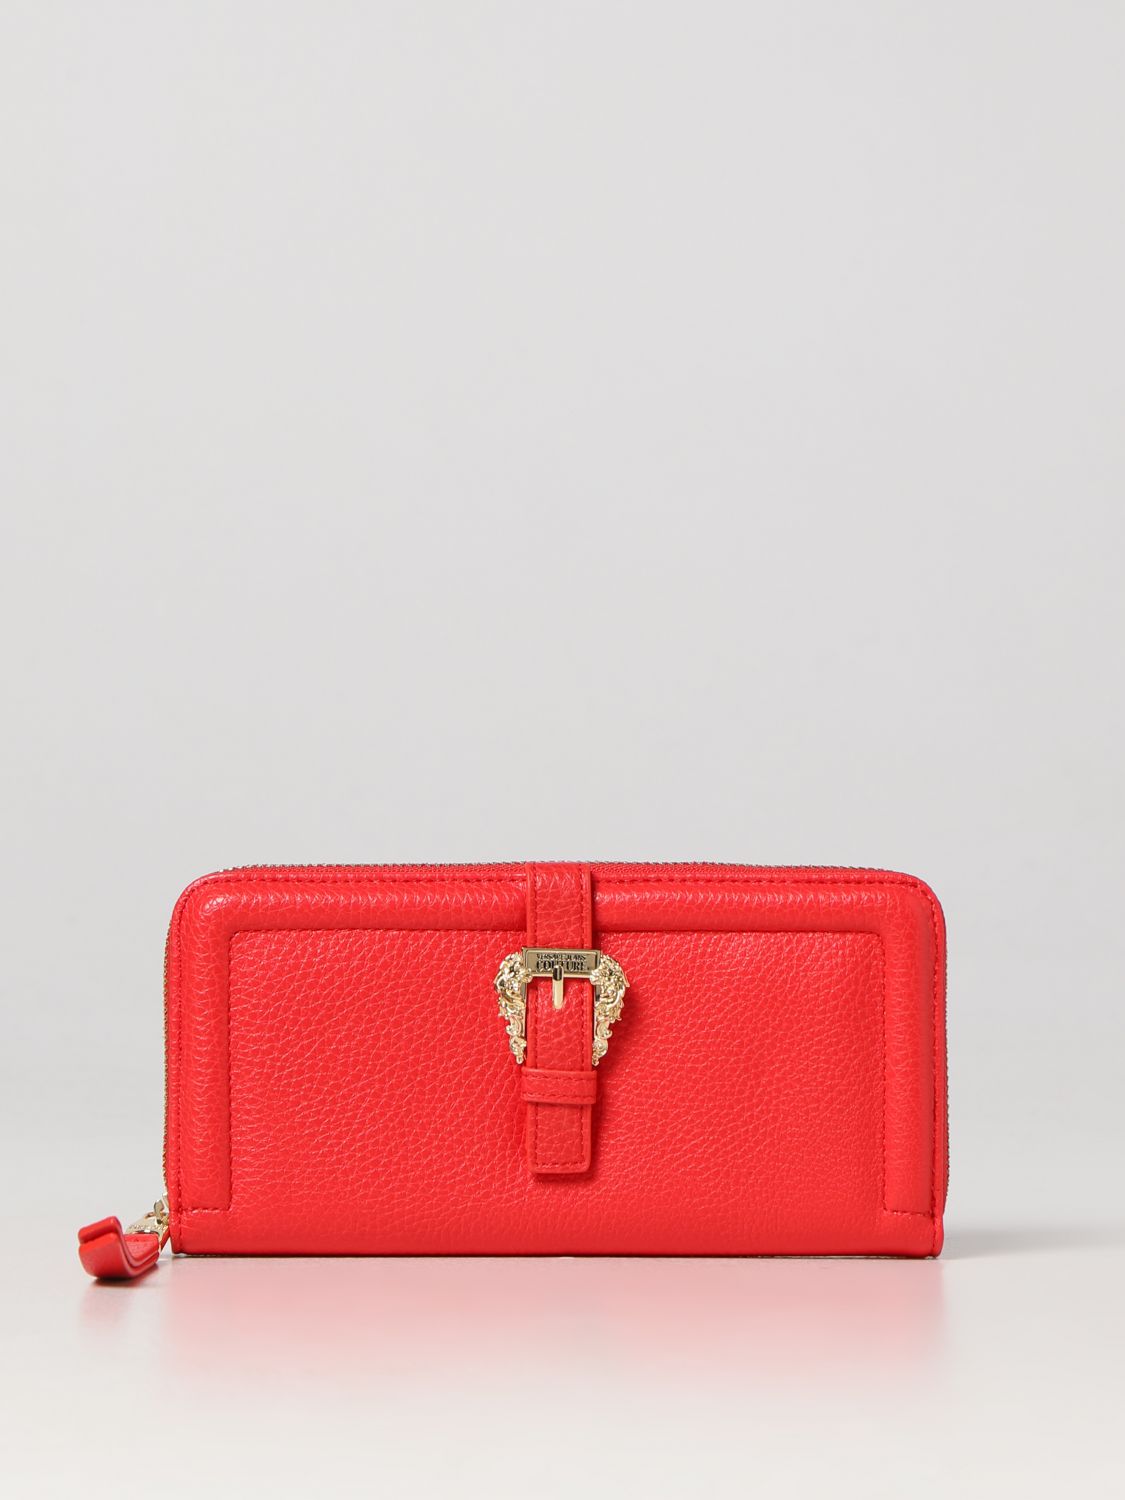 Versace 19V69 Abbigliamento Sportivo Italy Red Shoulder Tote Bag Purse |  eBay